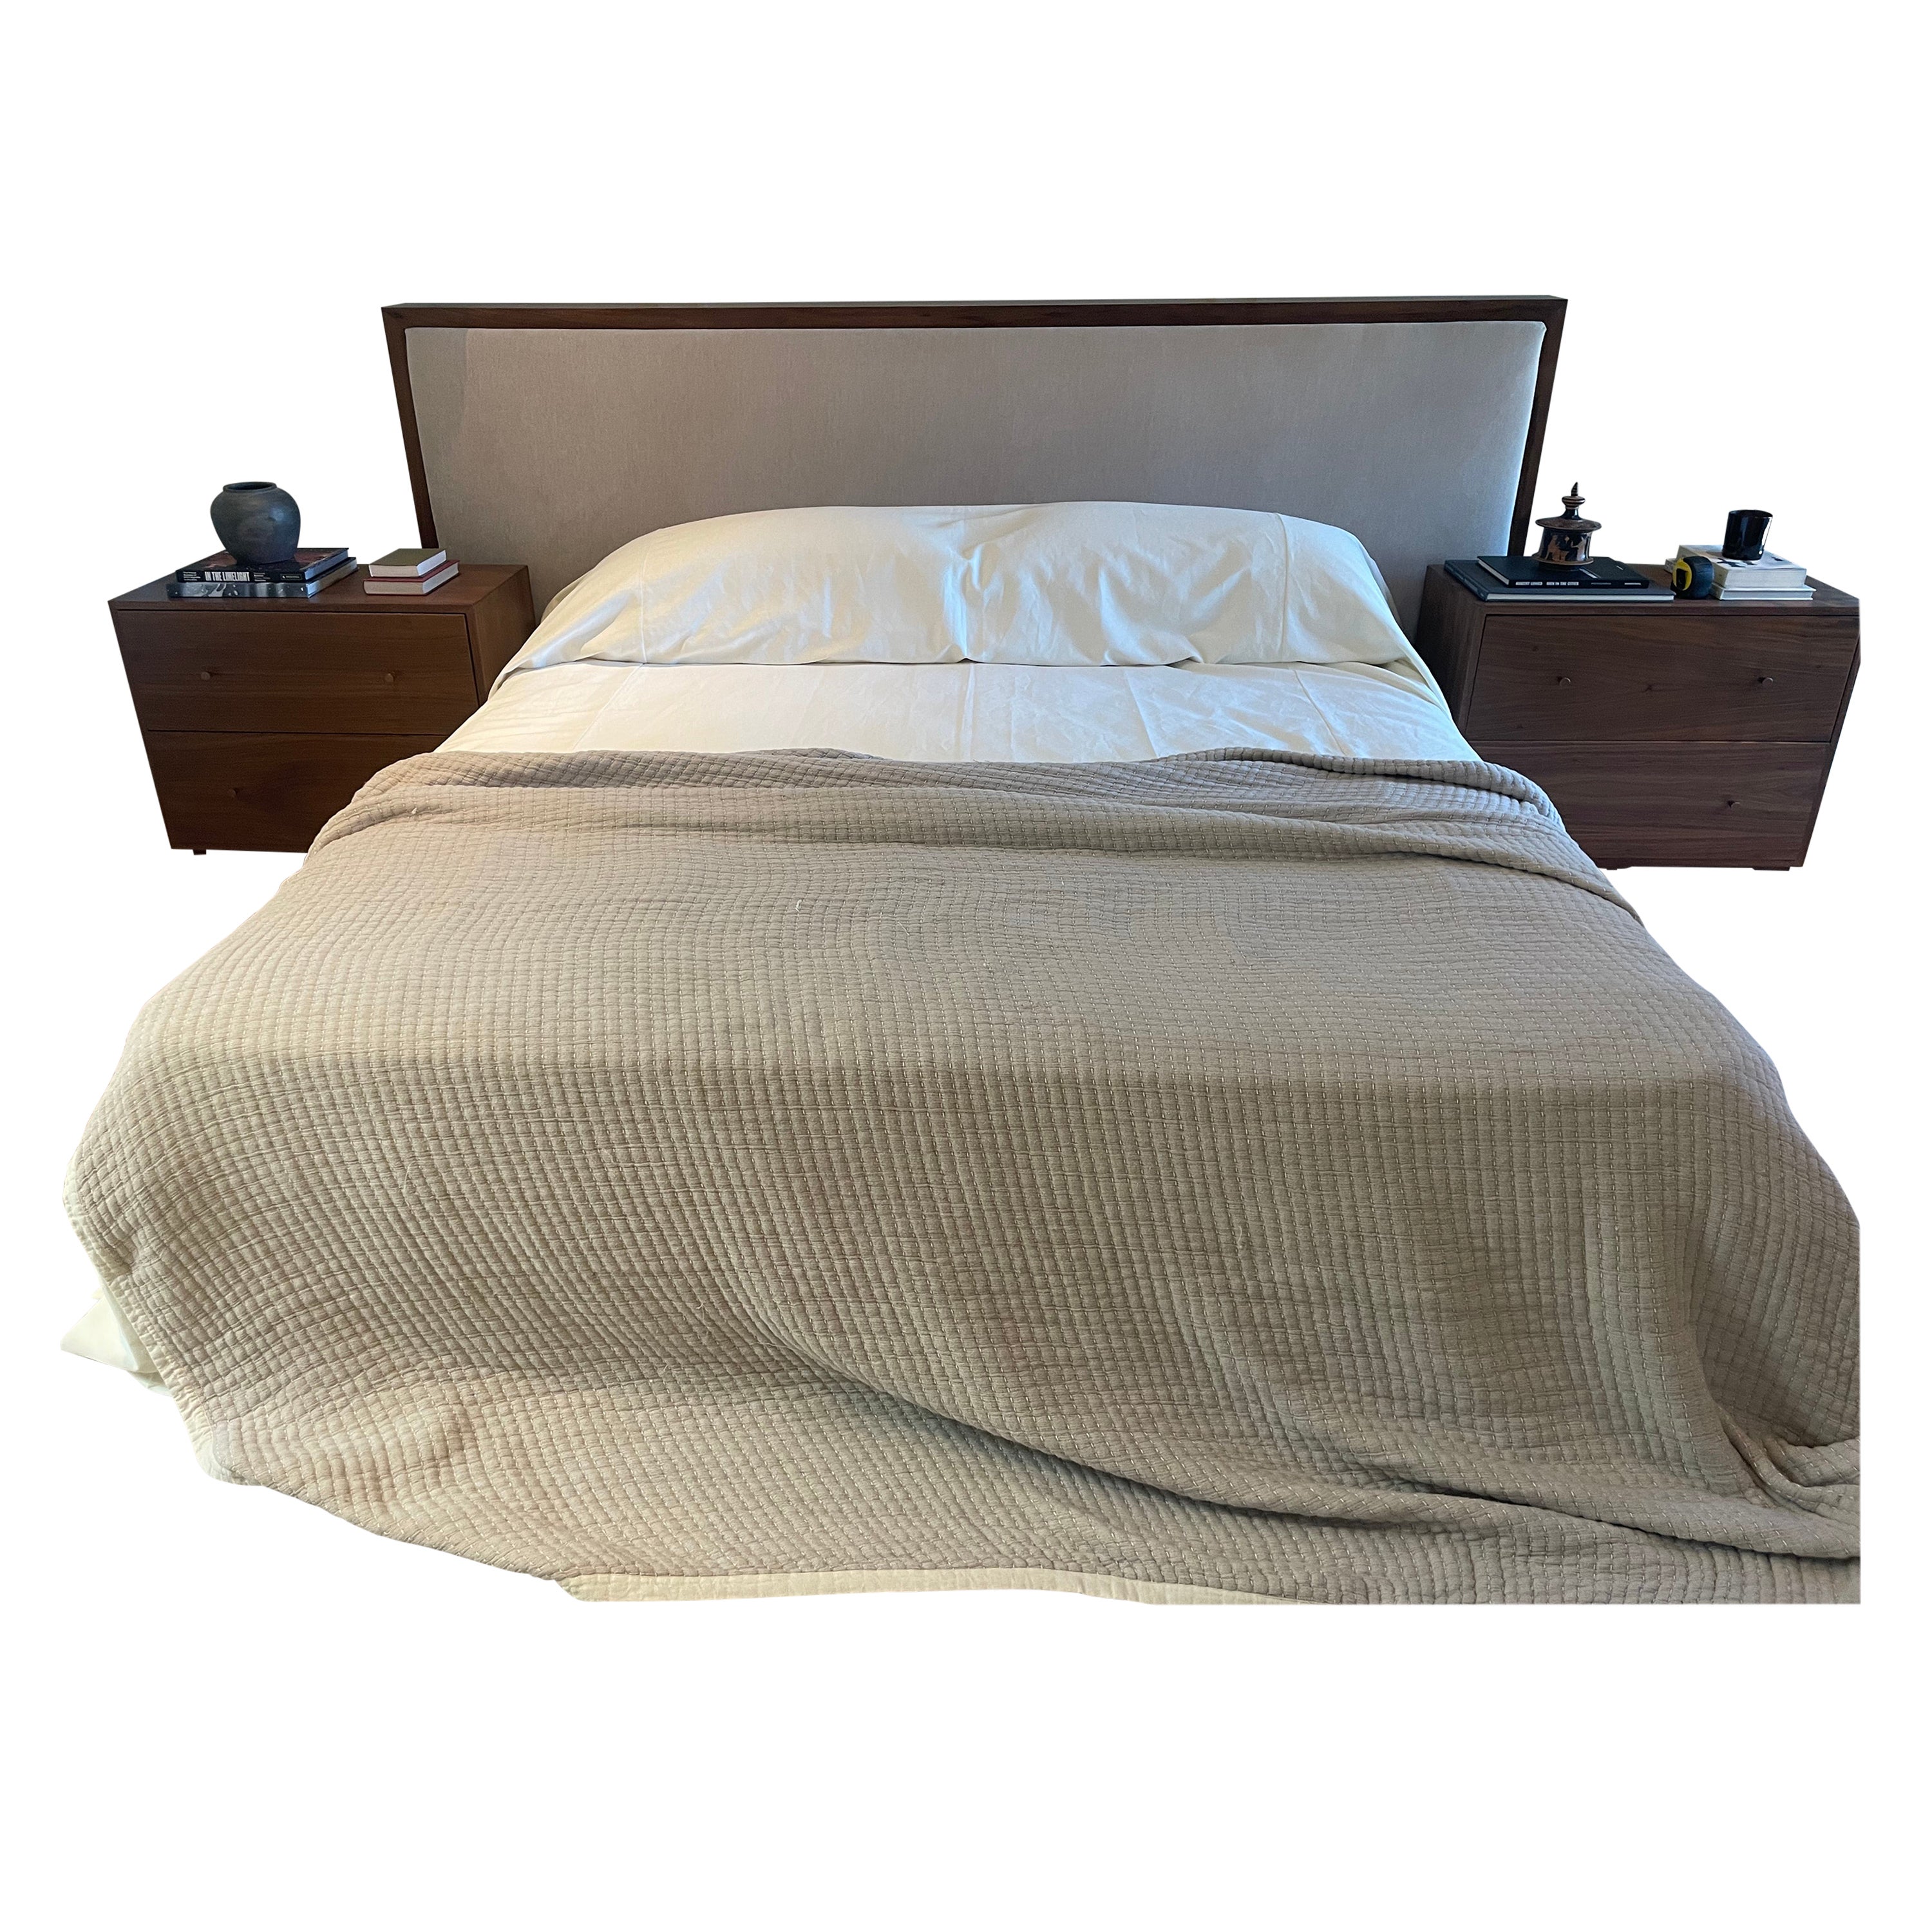 Kingsize-Bett in kaffeefarbenem Nussbaum, Kopfteil aus versilbertem weißem Mohair im Angebot